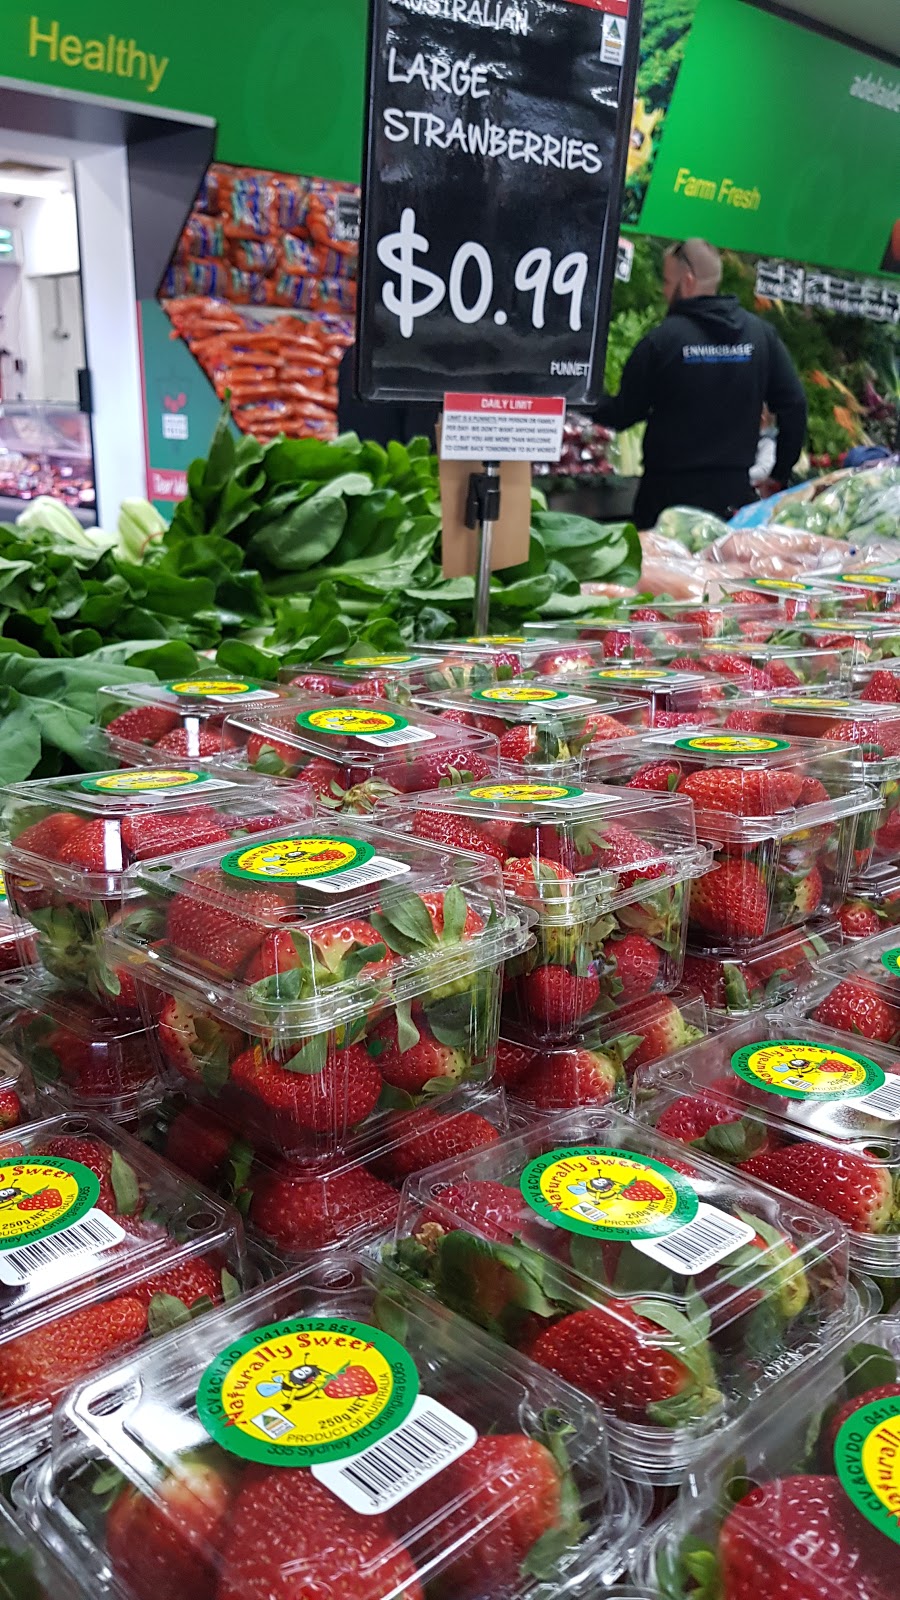 Adelaide Fresh Fruiterers | store | 3/206 Main S Rd, Morphett Vale SA 5162, Australia | 0883264488 OR +61 8 8326 4488